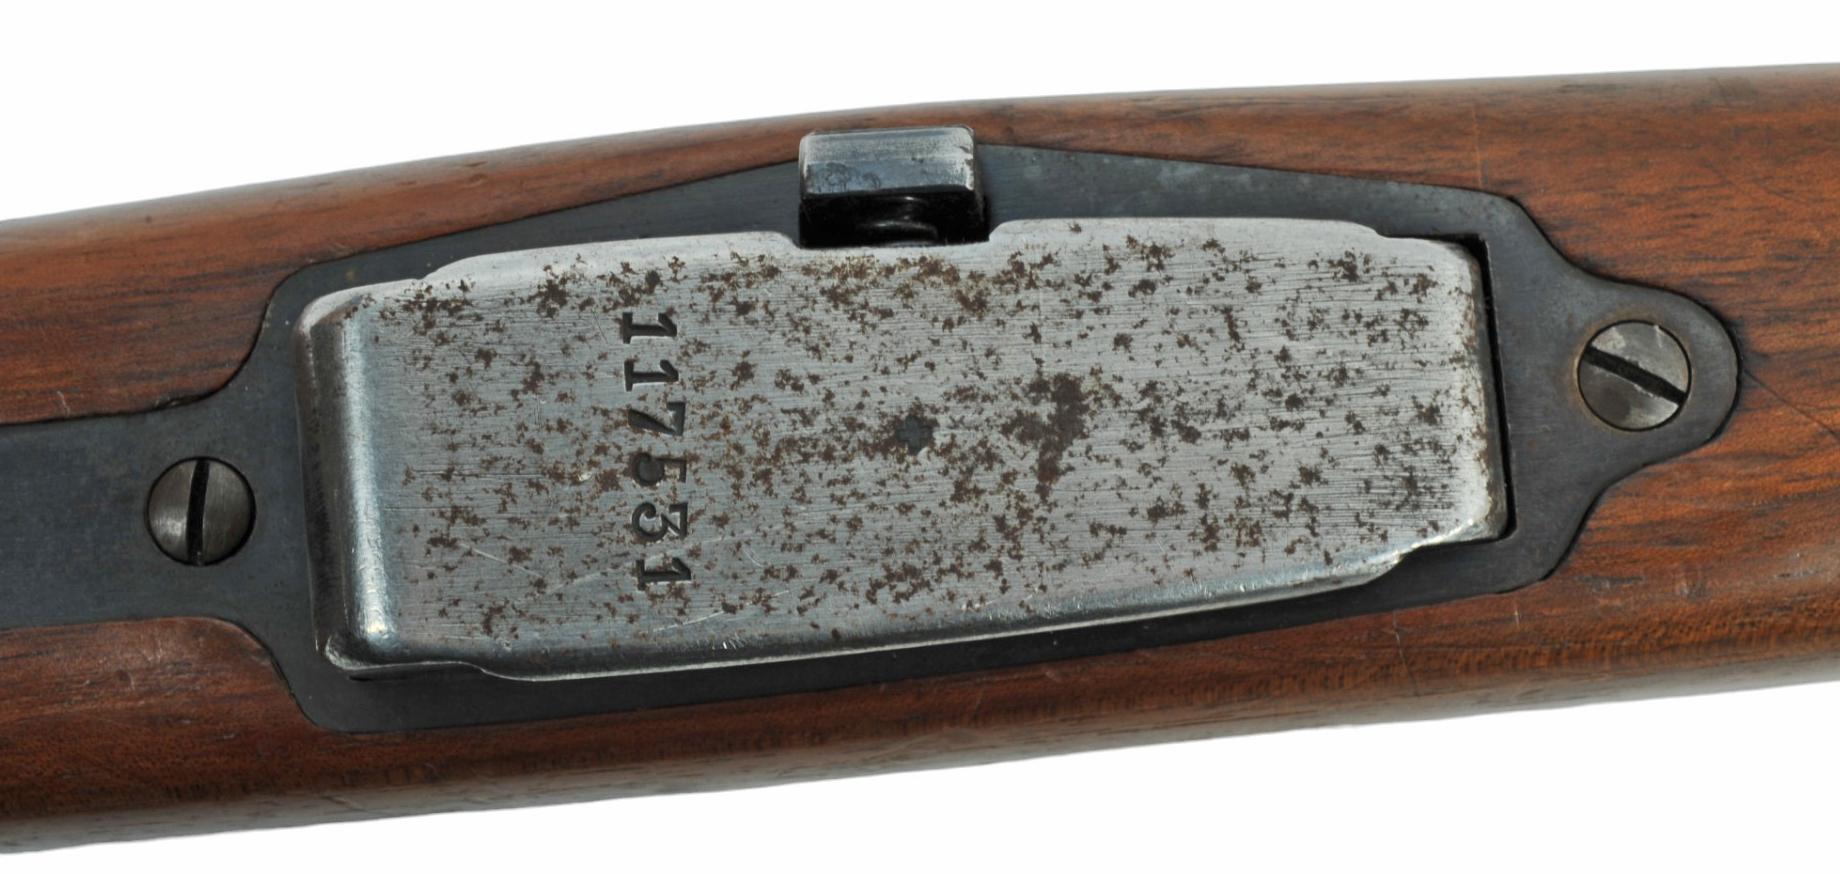 Swiss Military M1911 7.5x55mm Schmidt-Rubin Straight-Pull Rifle - FFL # P6873 (K1S1)